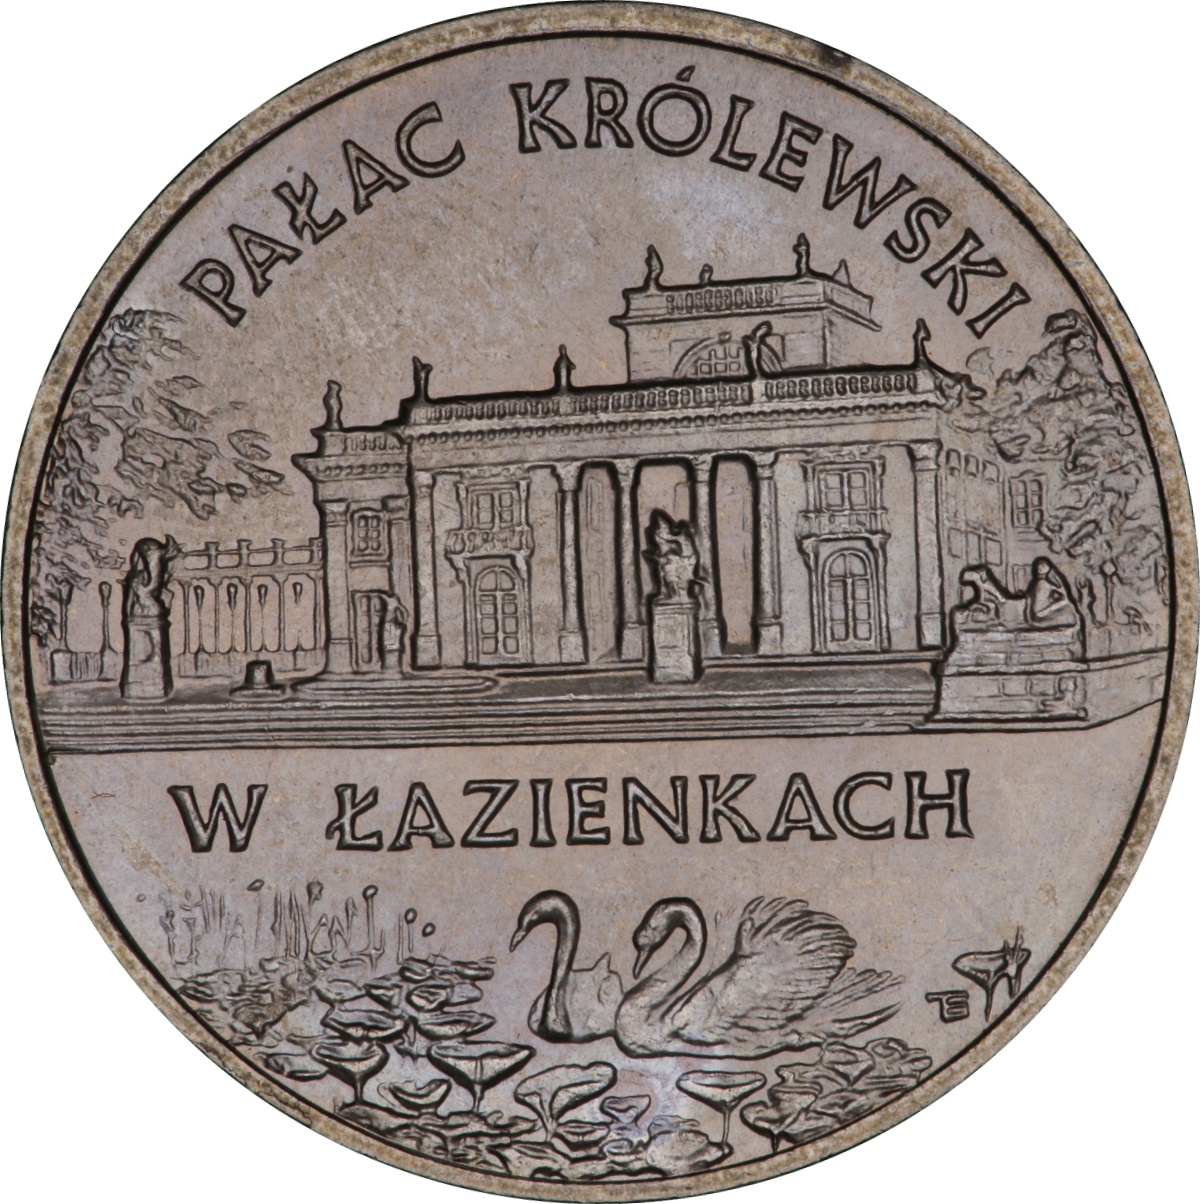 2zl-palac-krolewski-w-lazienkach-rewers-monety